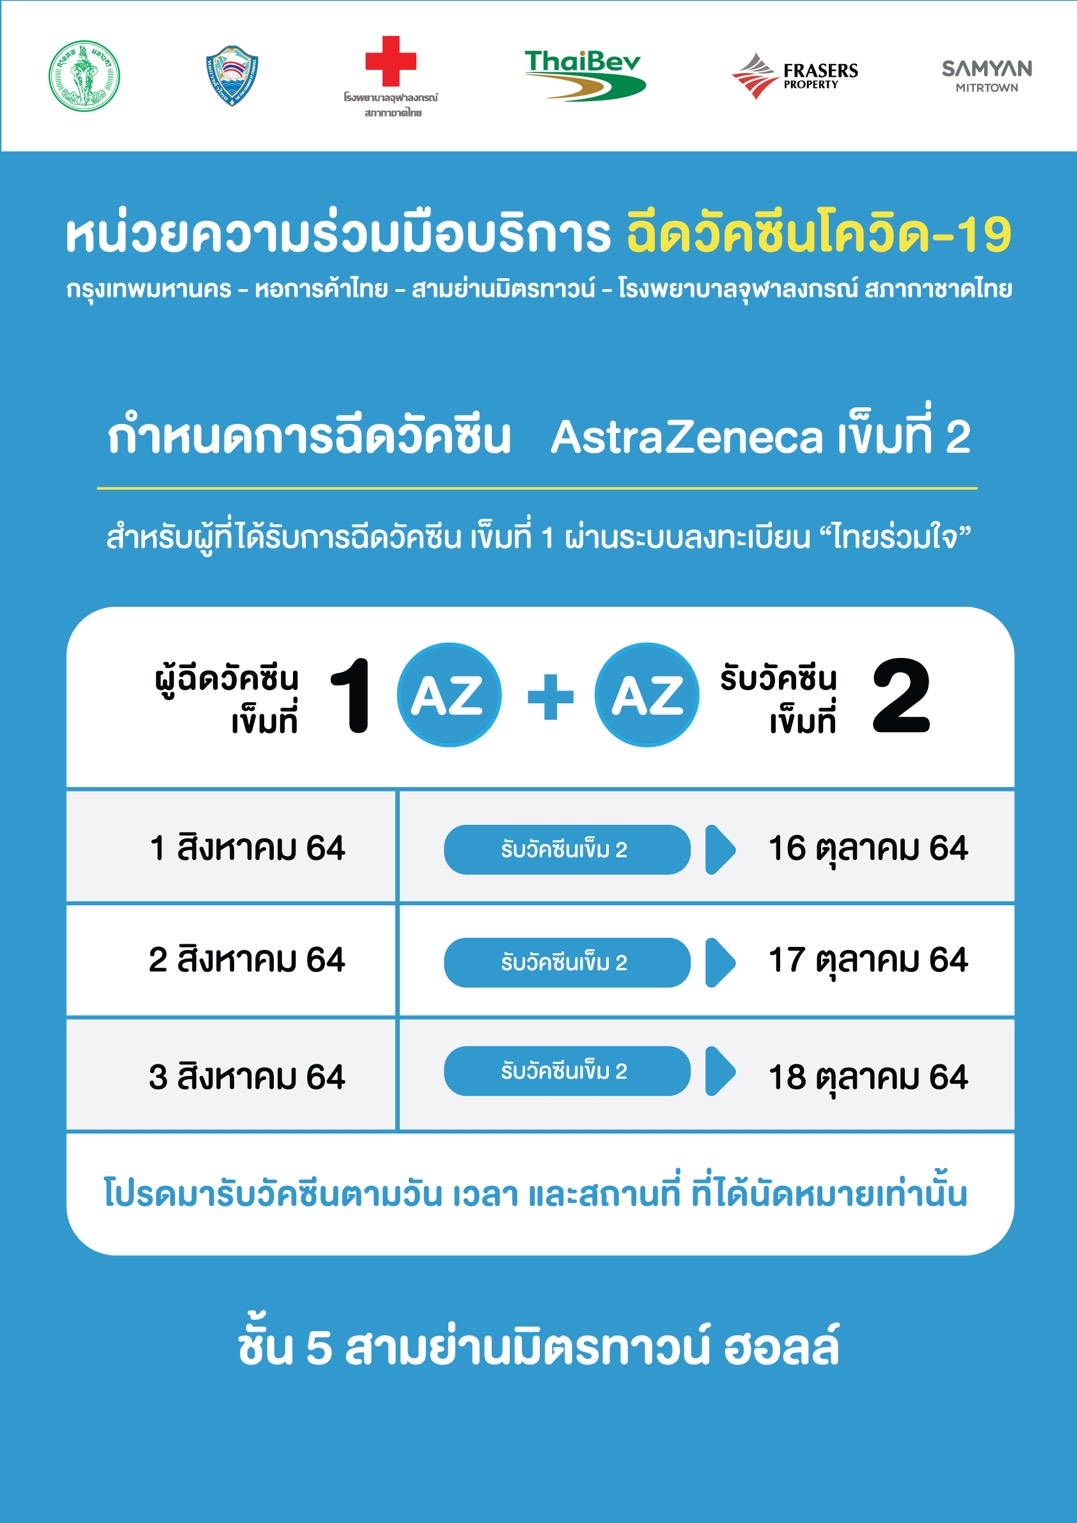 หน่วยความร่วมมือบริการ ฉีดวัคซีนโควิด-19 กรุงเทพมหานคร – หอการค้าไทย – สามย่านมิตรทาวน์ – โรงพยาบาลจุฬาลงกรณ์ สภากาชาดไทย